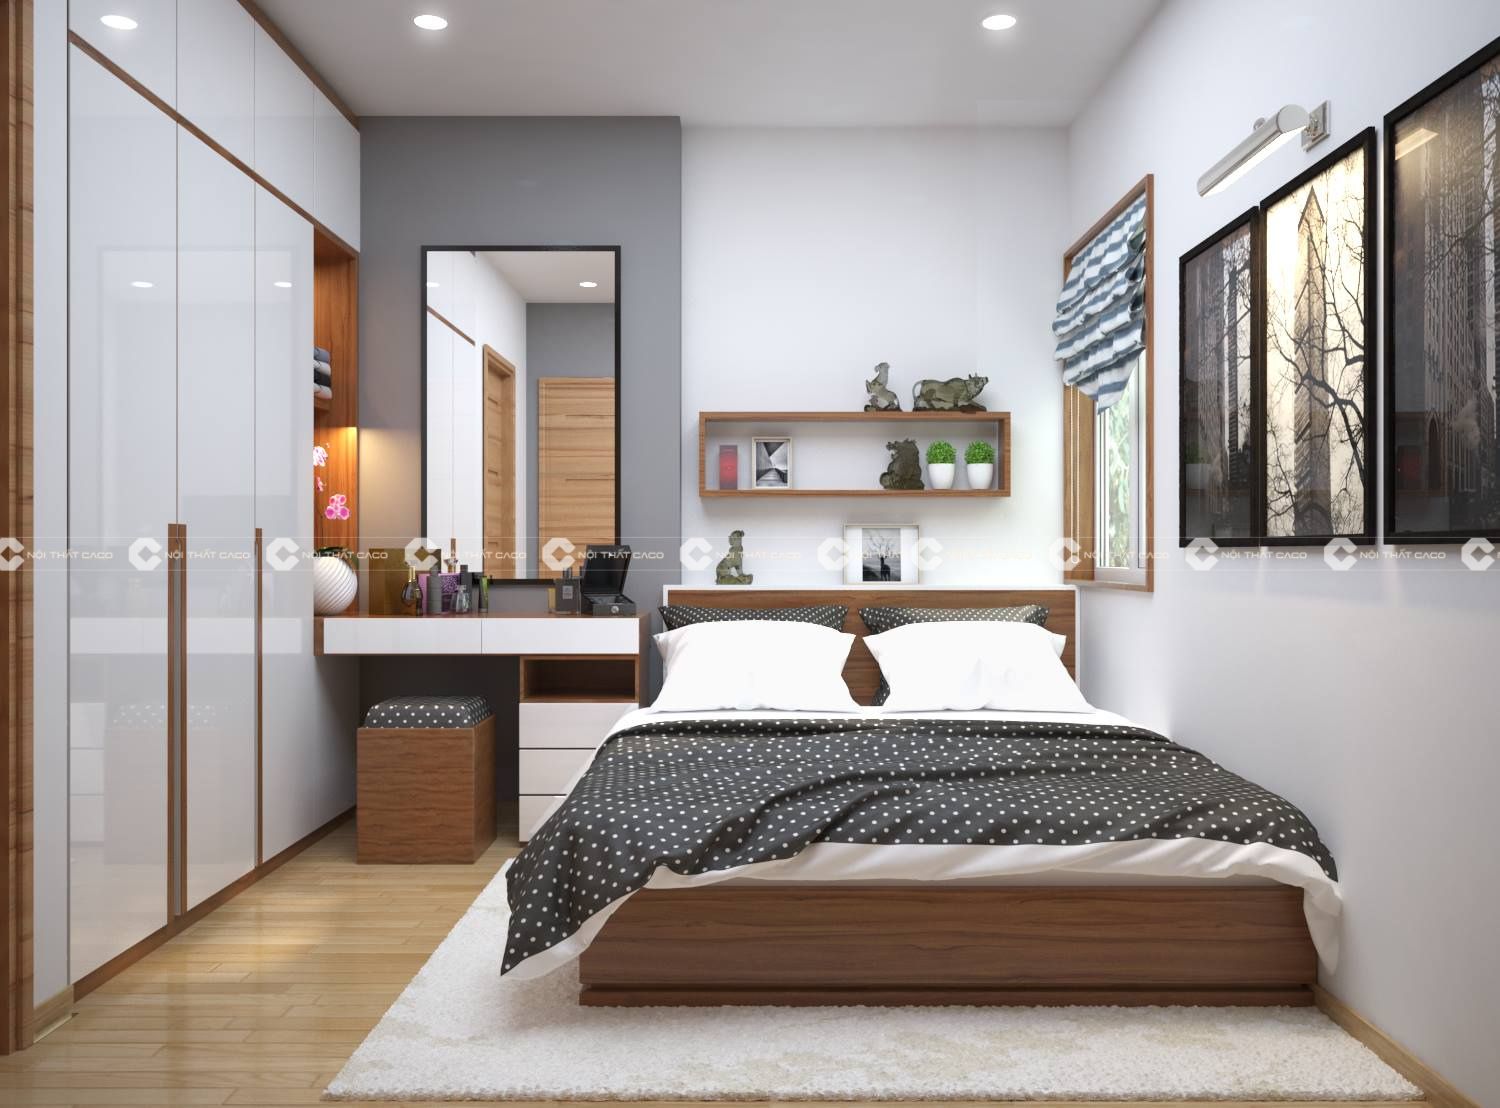 Thiết kế thi công nội thất phòng ngủ hiện đại - chị Ngọc quận 5 9